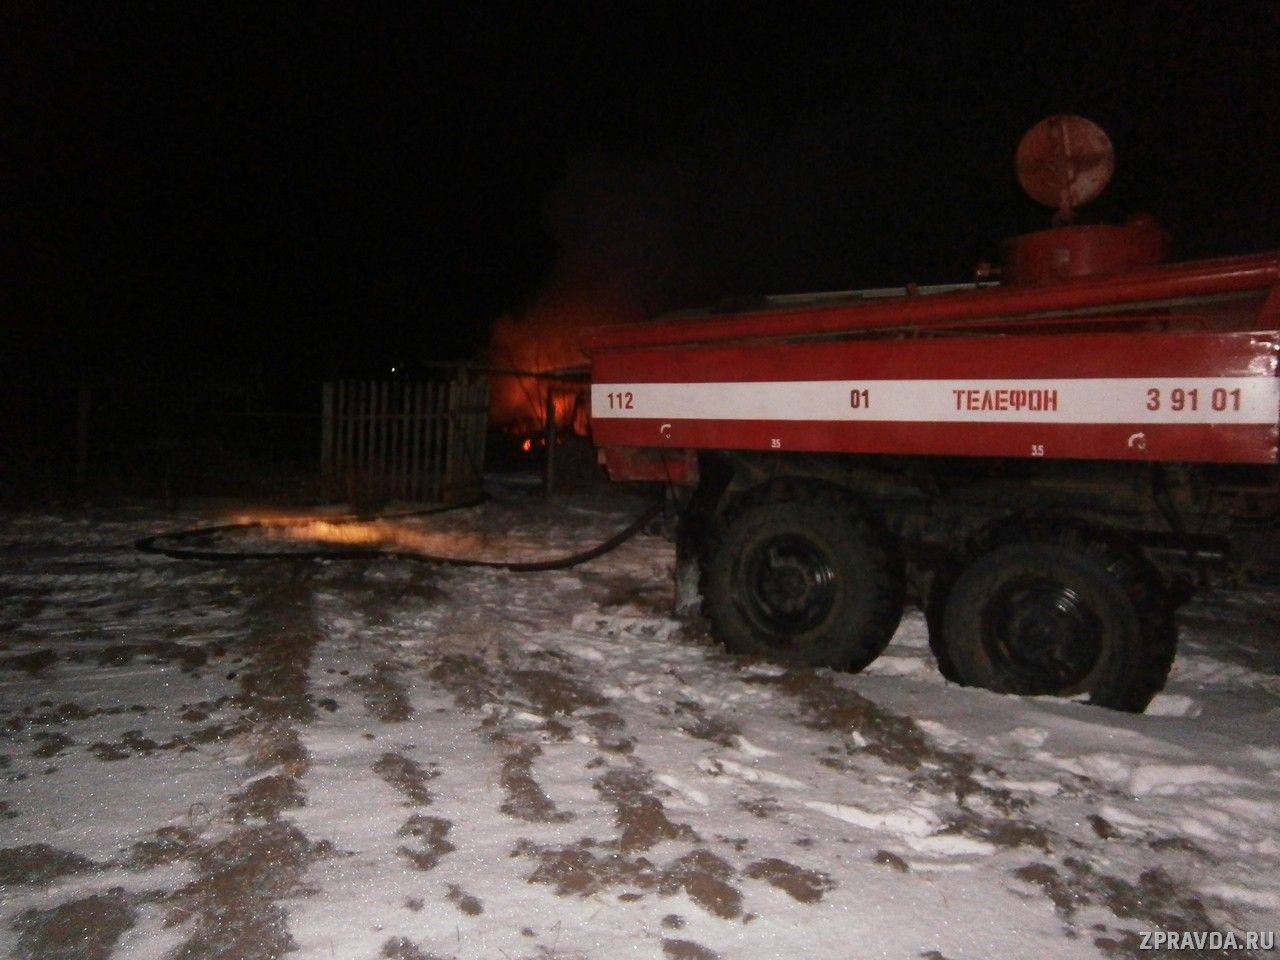 Добровольцы из села Большие Ачасыры ликвидировали пожар